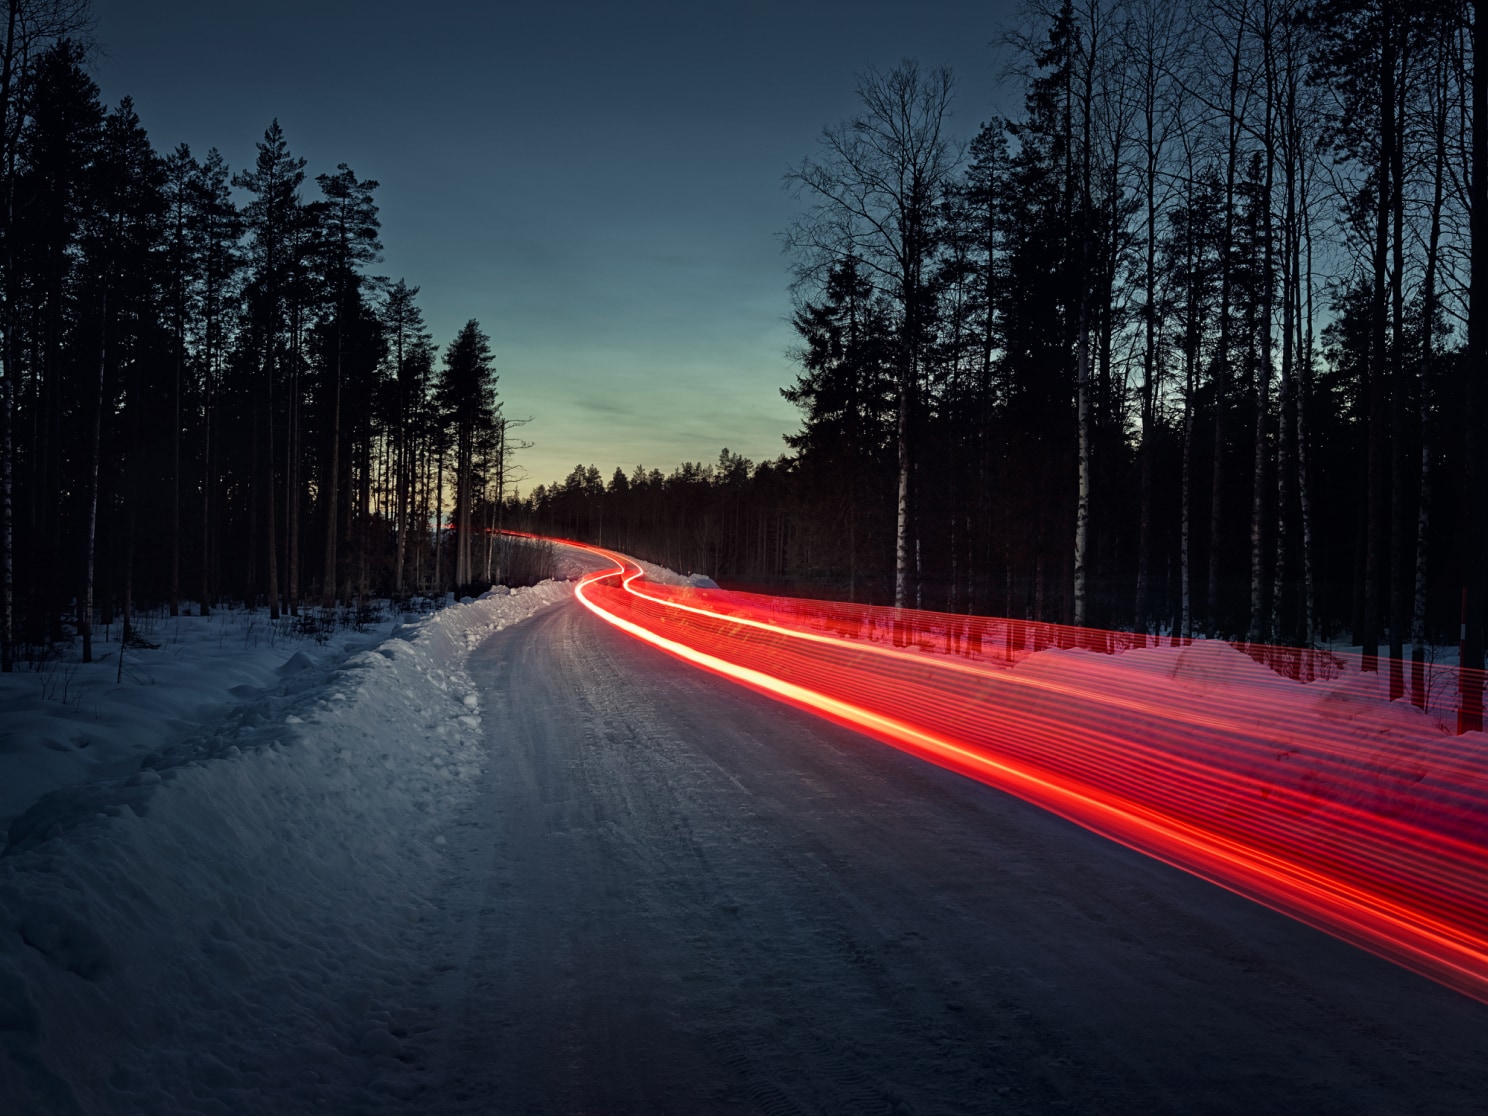 Een foto genomen met lange sluitertijd die een spoor toont van rode achterlichten op een ijzige weg.